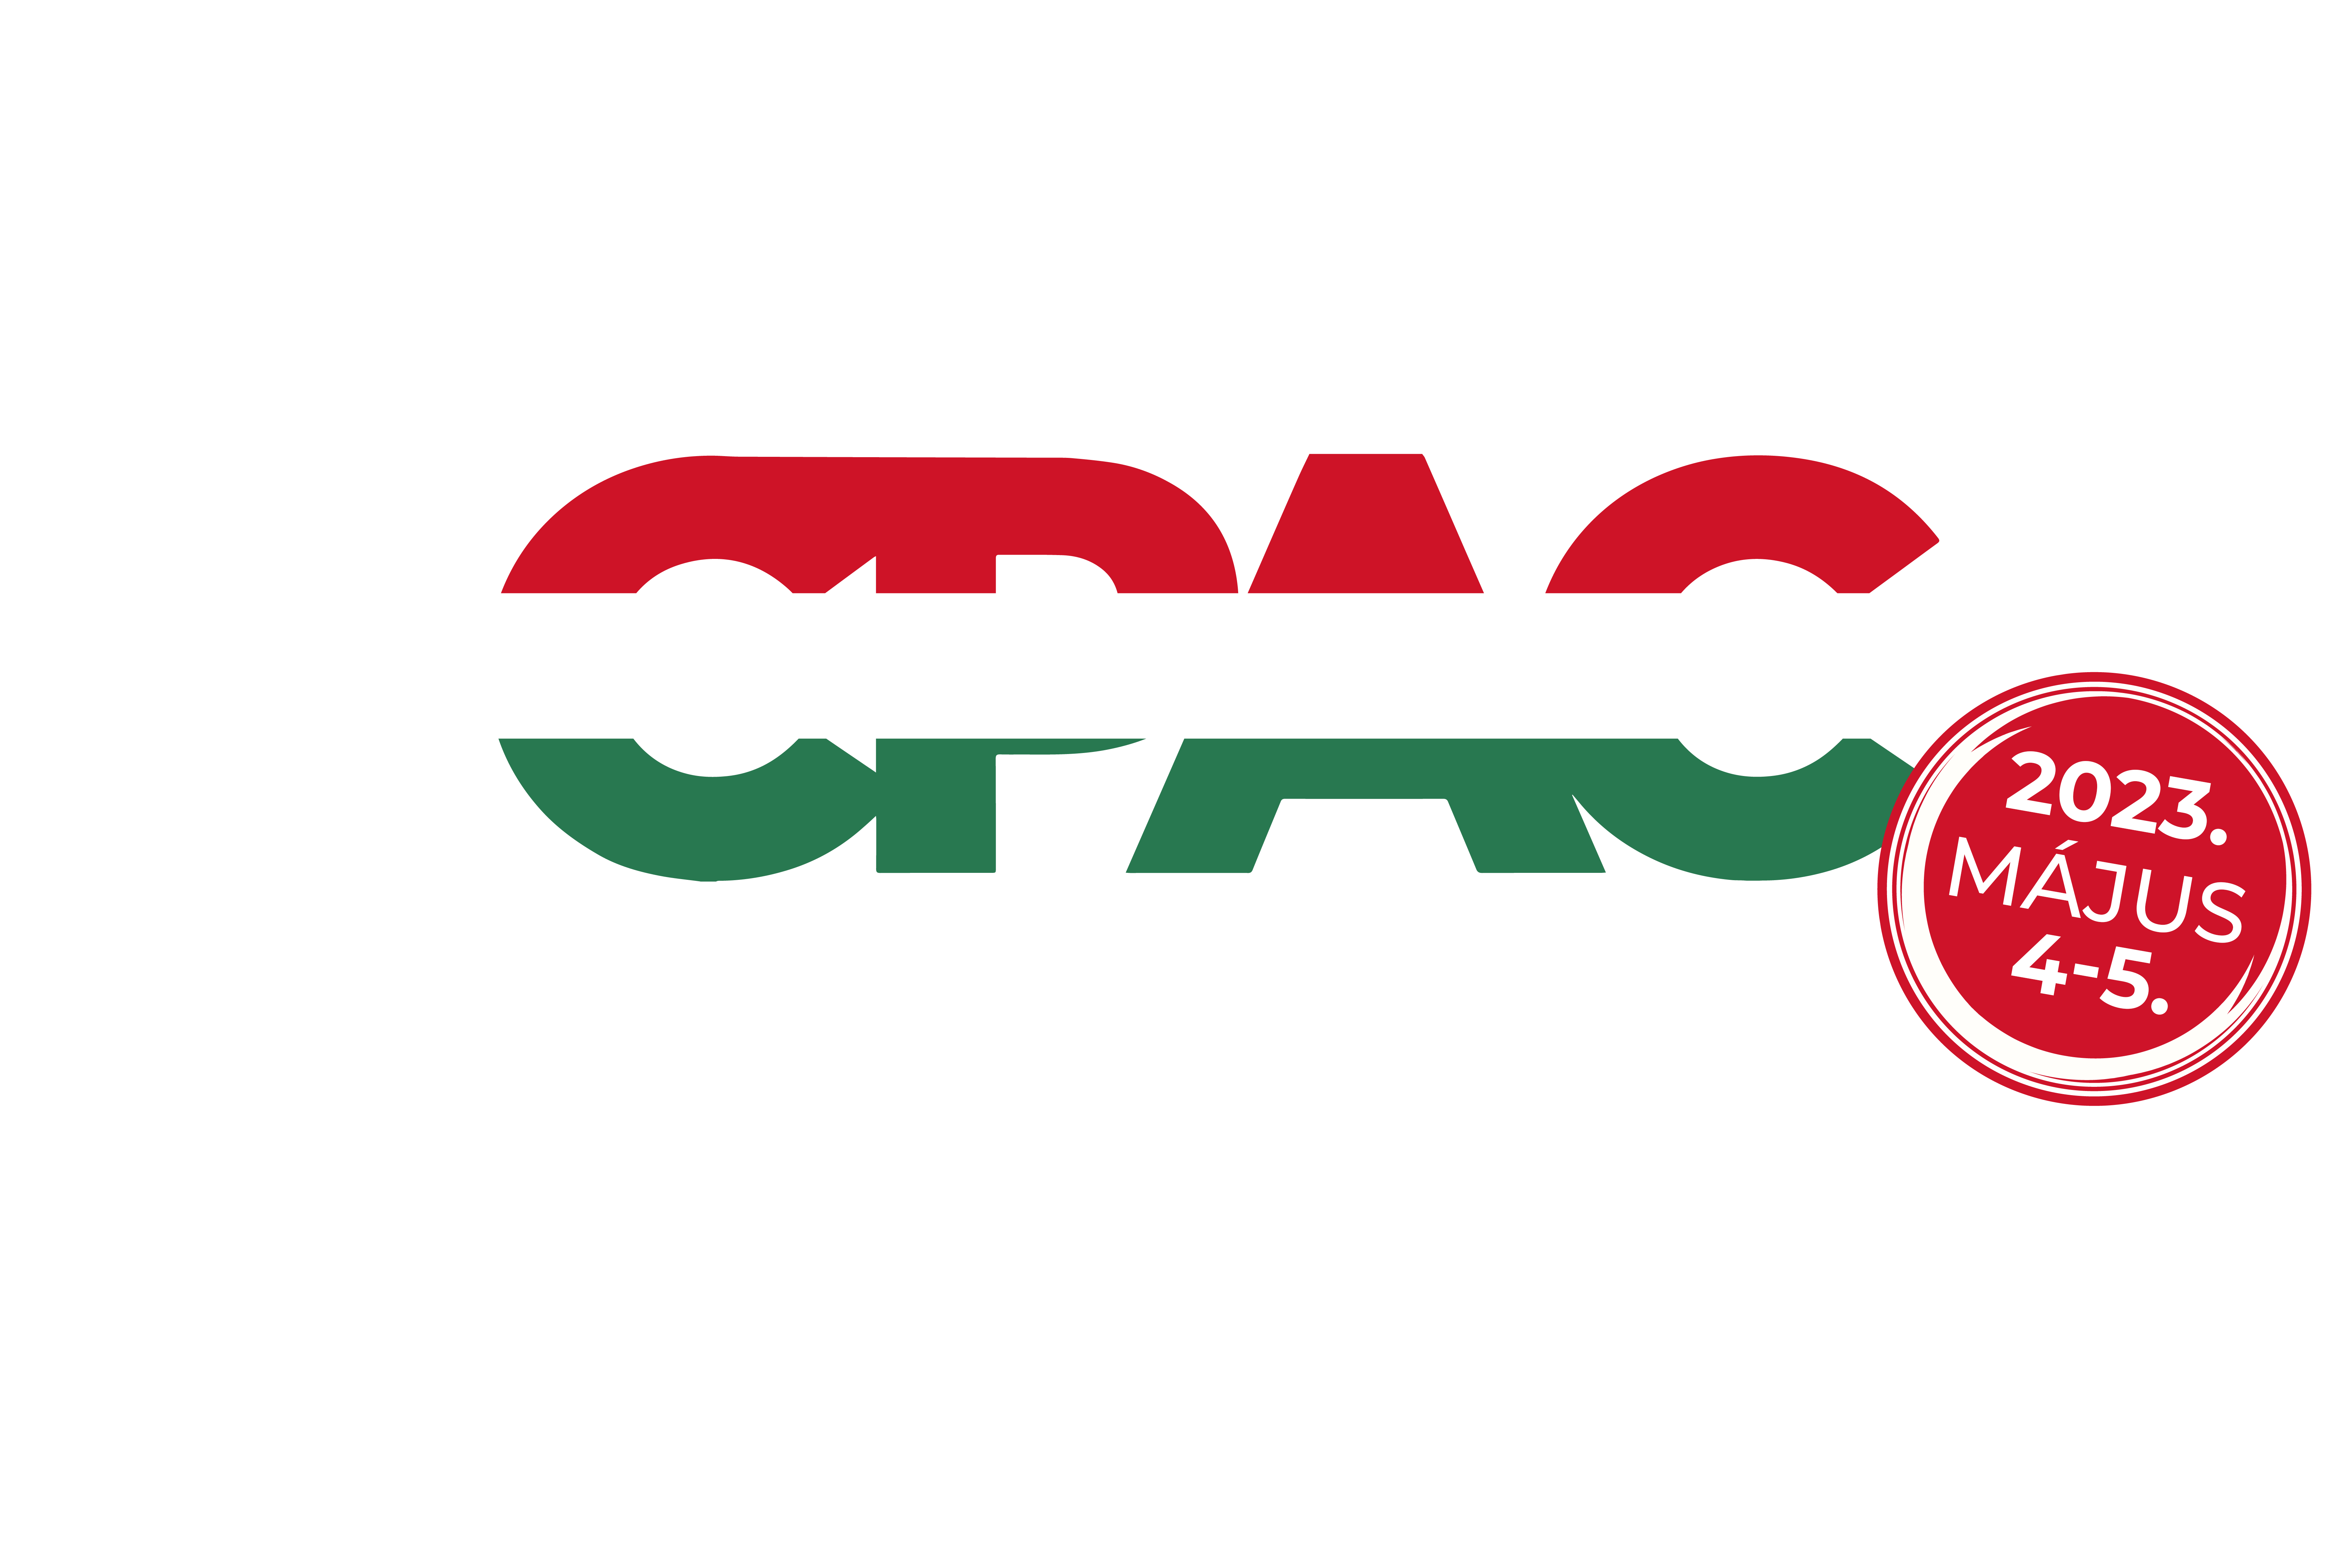 CPAC HUNGARY 2023